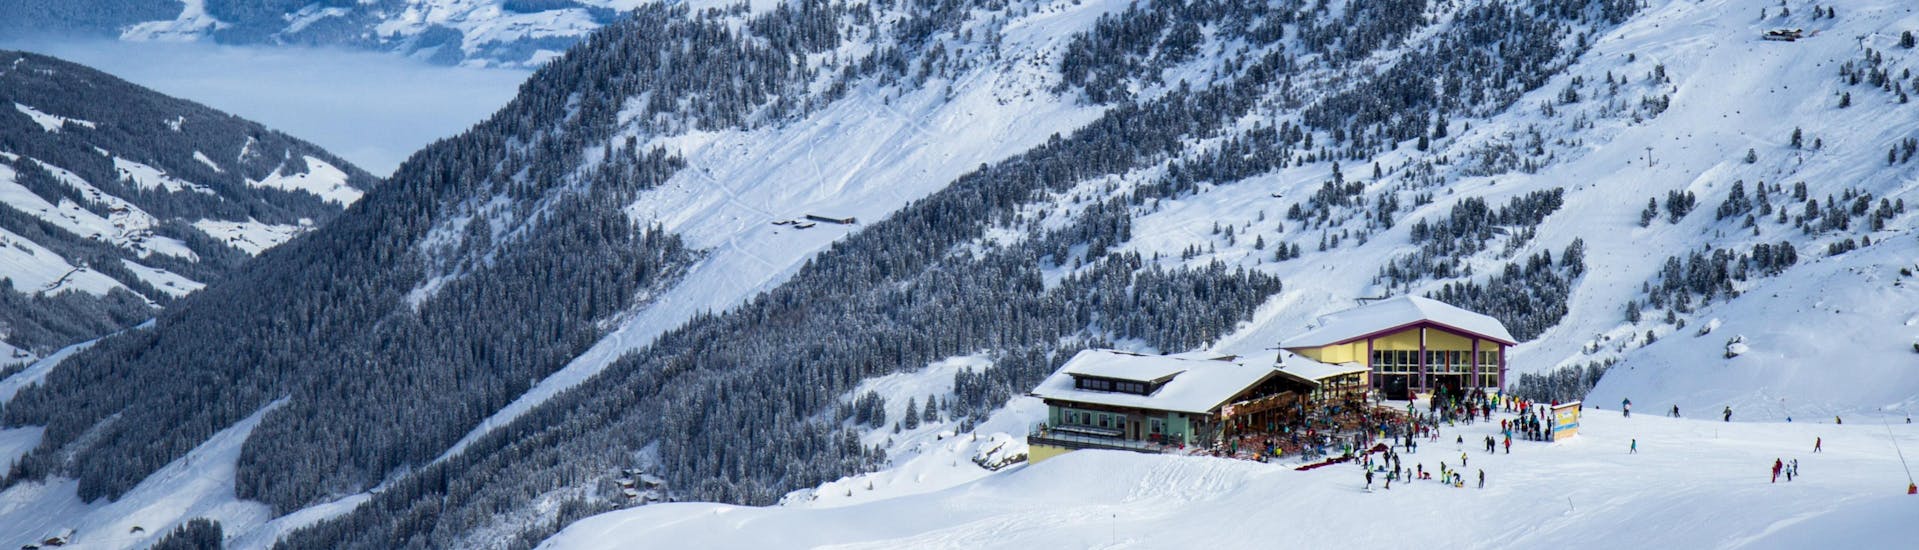 Blick auf das Skigebiet Kaltenbach, wo örtliche Skischulen ihre Skikurse anbieten.